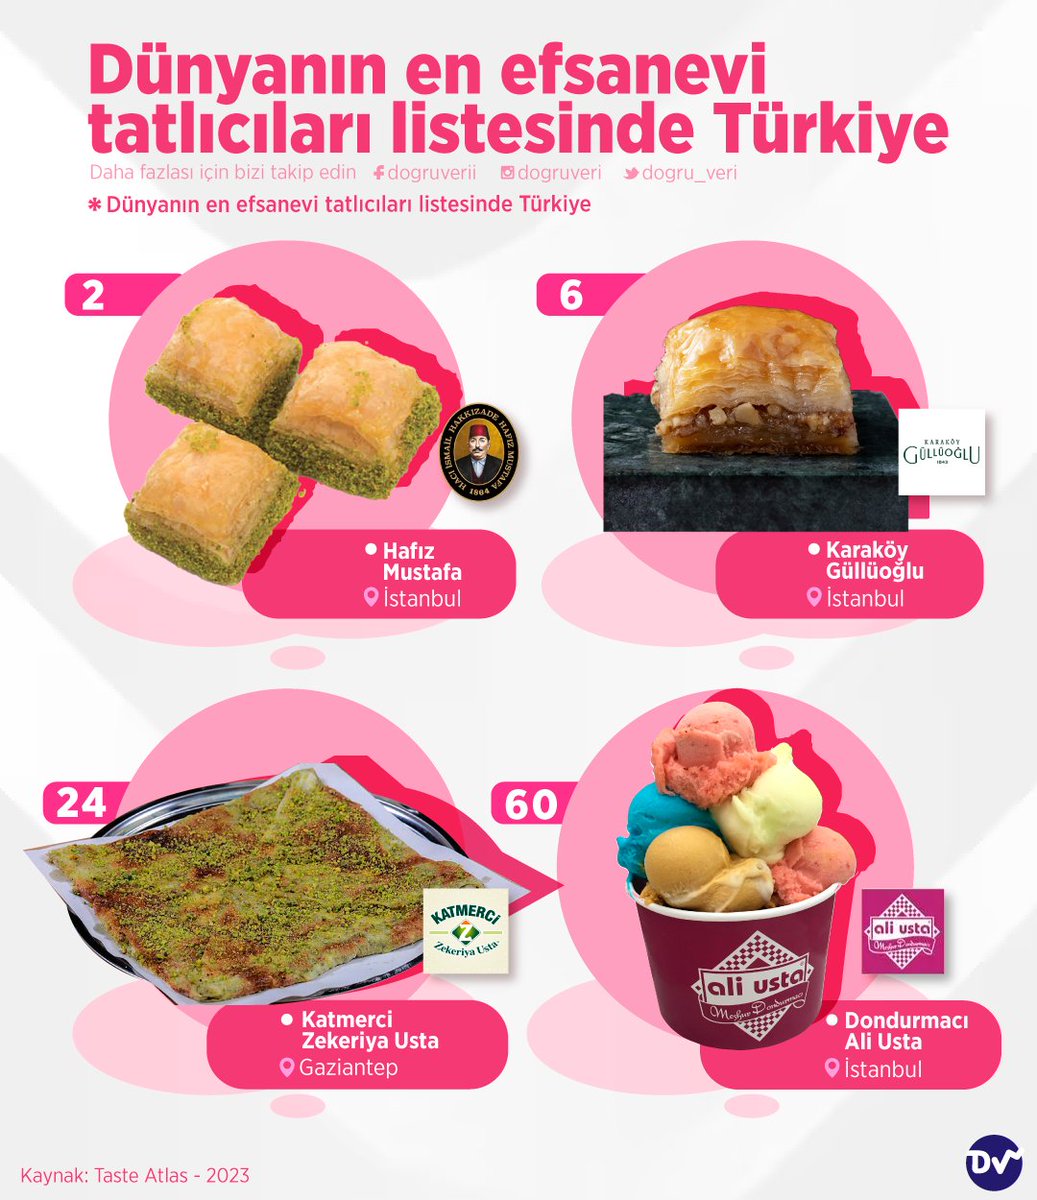 🥧 Taste Atlas'a göre dünyanın en efsane tatlıcıları arasında yer alan ve Türkiye'de bulunan tatlıcıları listeledik. 🍰 Listenin 2. sırasında İstanbul'dan Hafız Mustafa yer alıyor. Karaköy Güllüoğlu, Katmerci Zekeriya Usta ve Dondurmacı Ali Usta da listedeki diğer isimler.